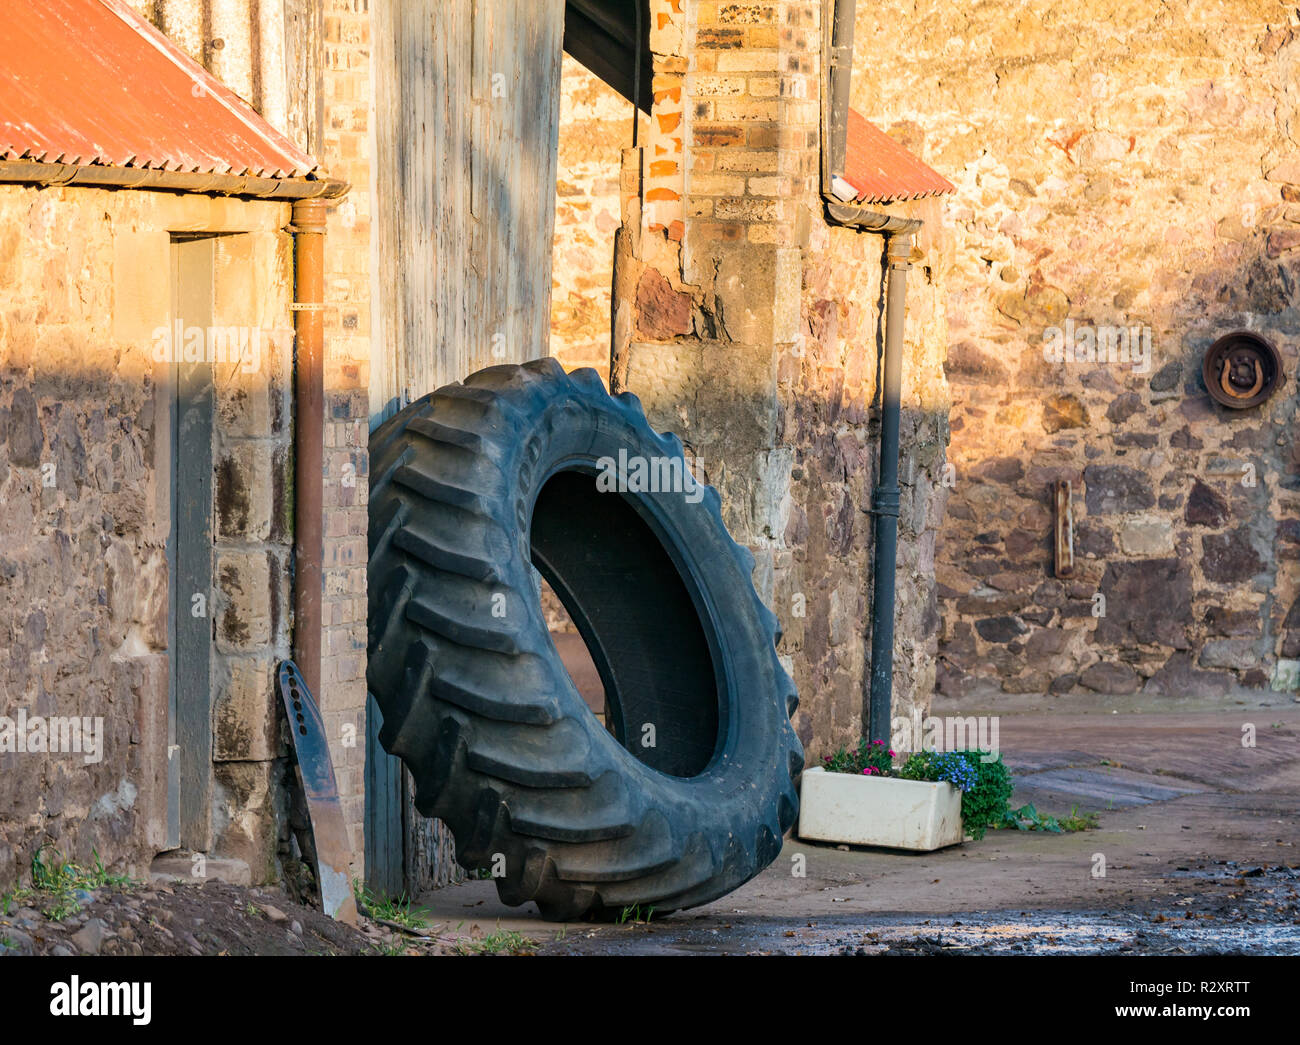 Enorme Traktor Reifen hielten gegen die Wand von einem landwirtschaftlichen Gebäude in einem Bauernhof, East Lothian, Schottland, Großbritannien Stockfoto